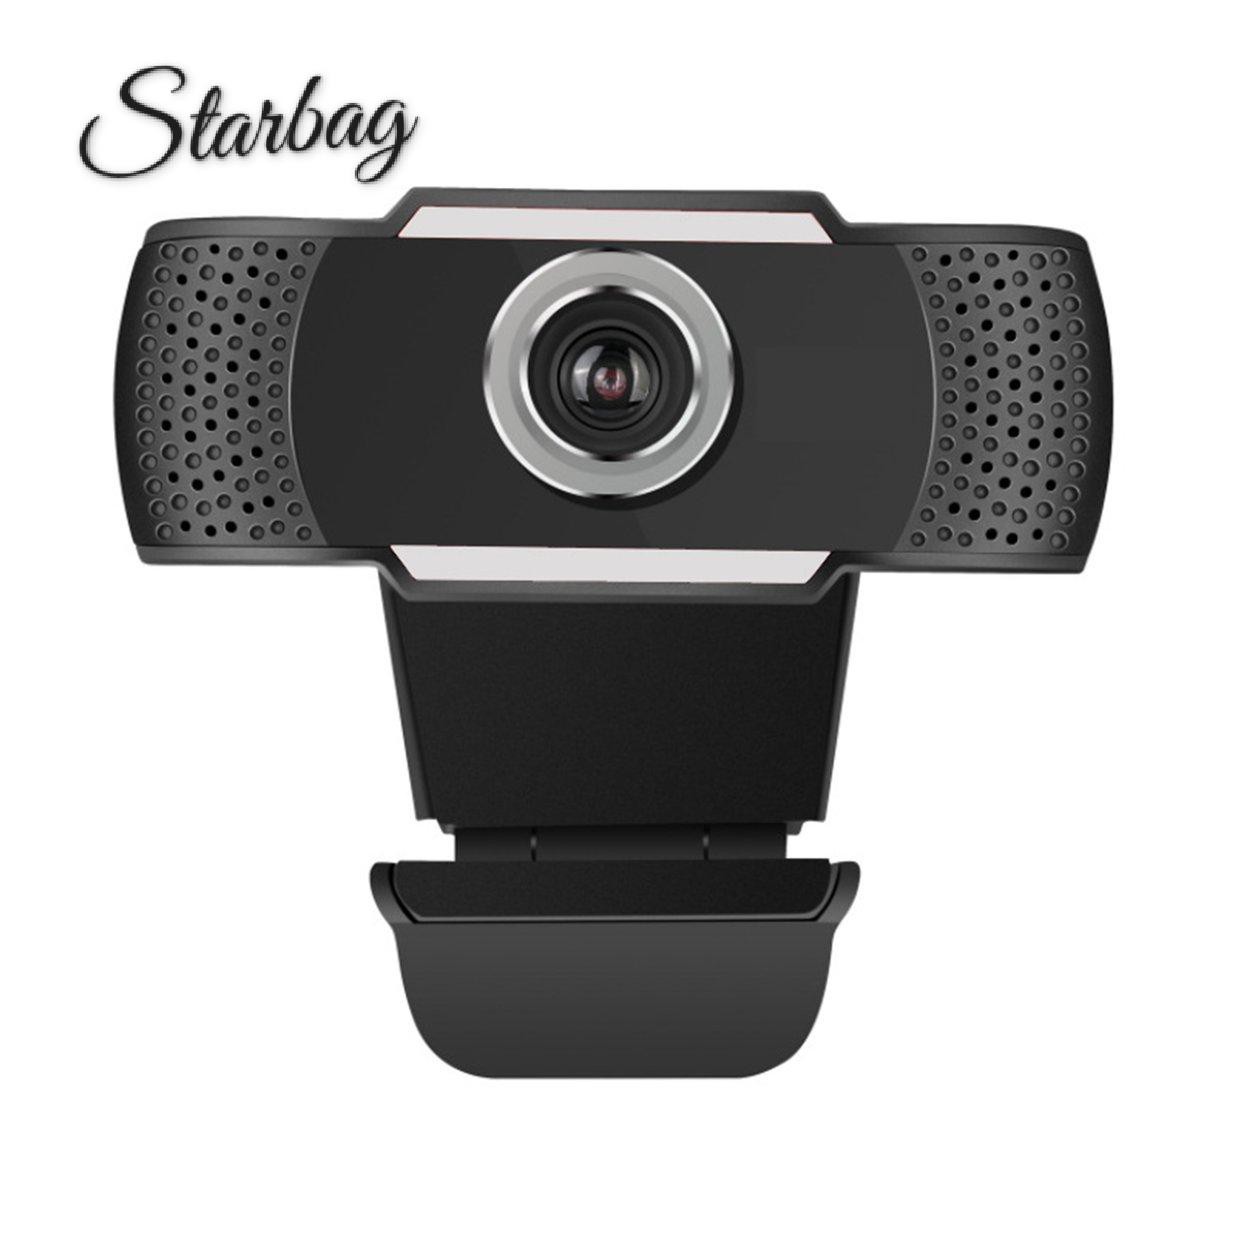 1 Webcam 1080p Tự Động Hd 12 Triệu Pixels Có Mic Cho Máy Tính